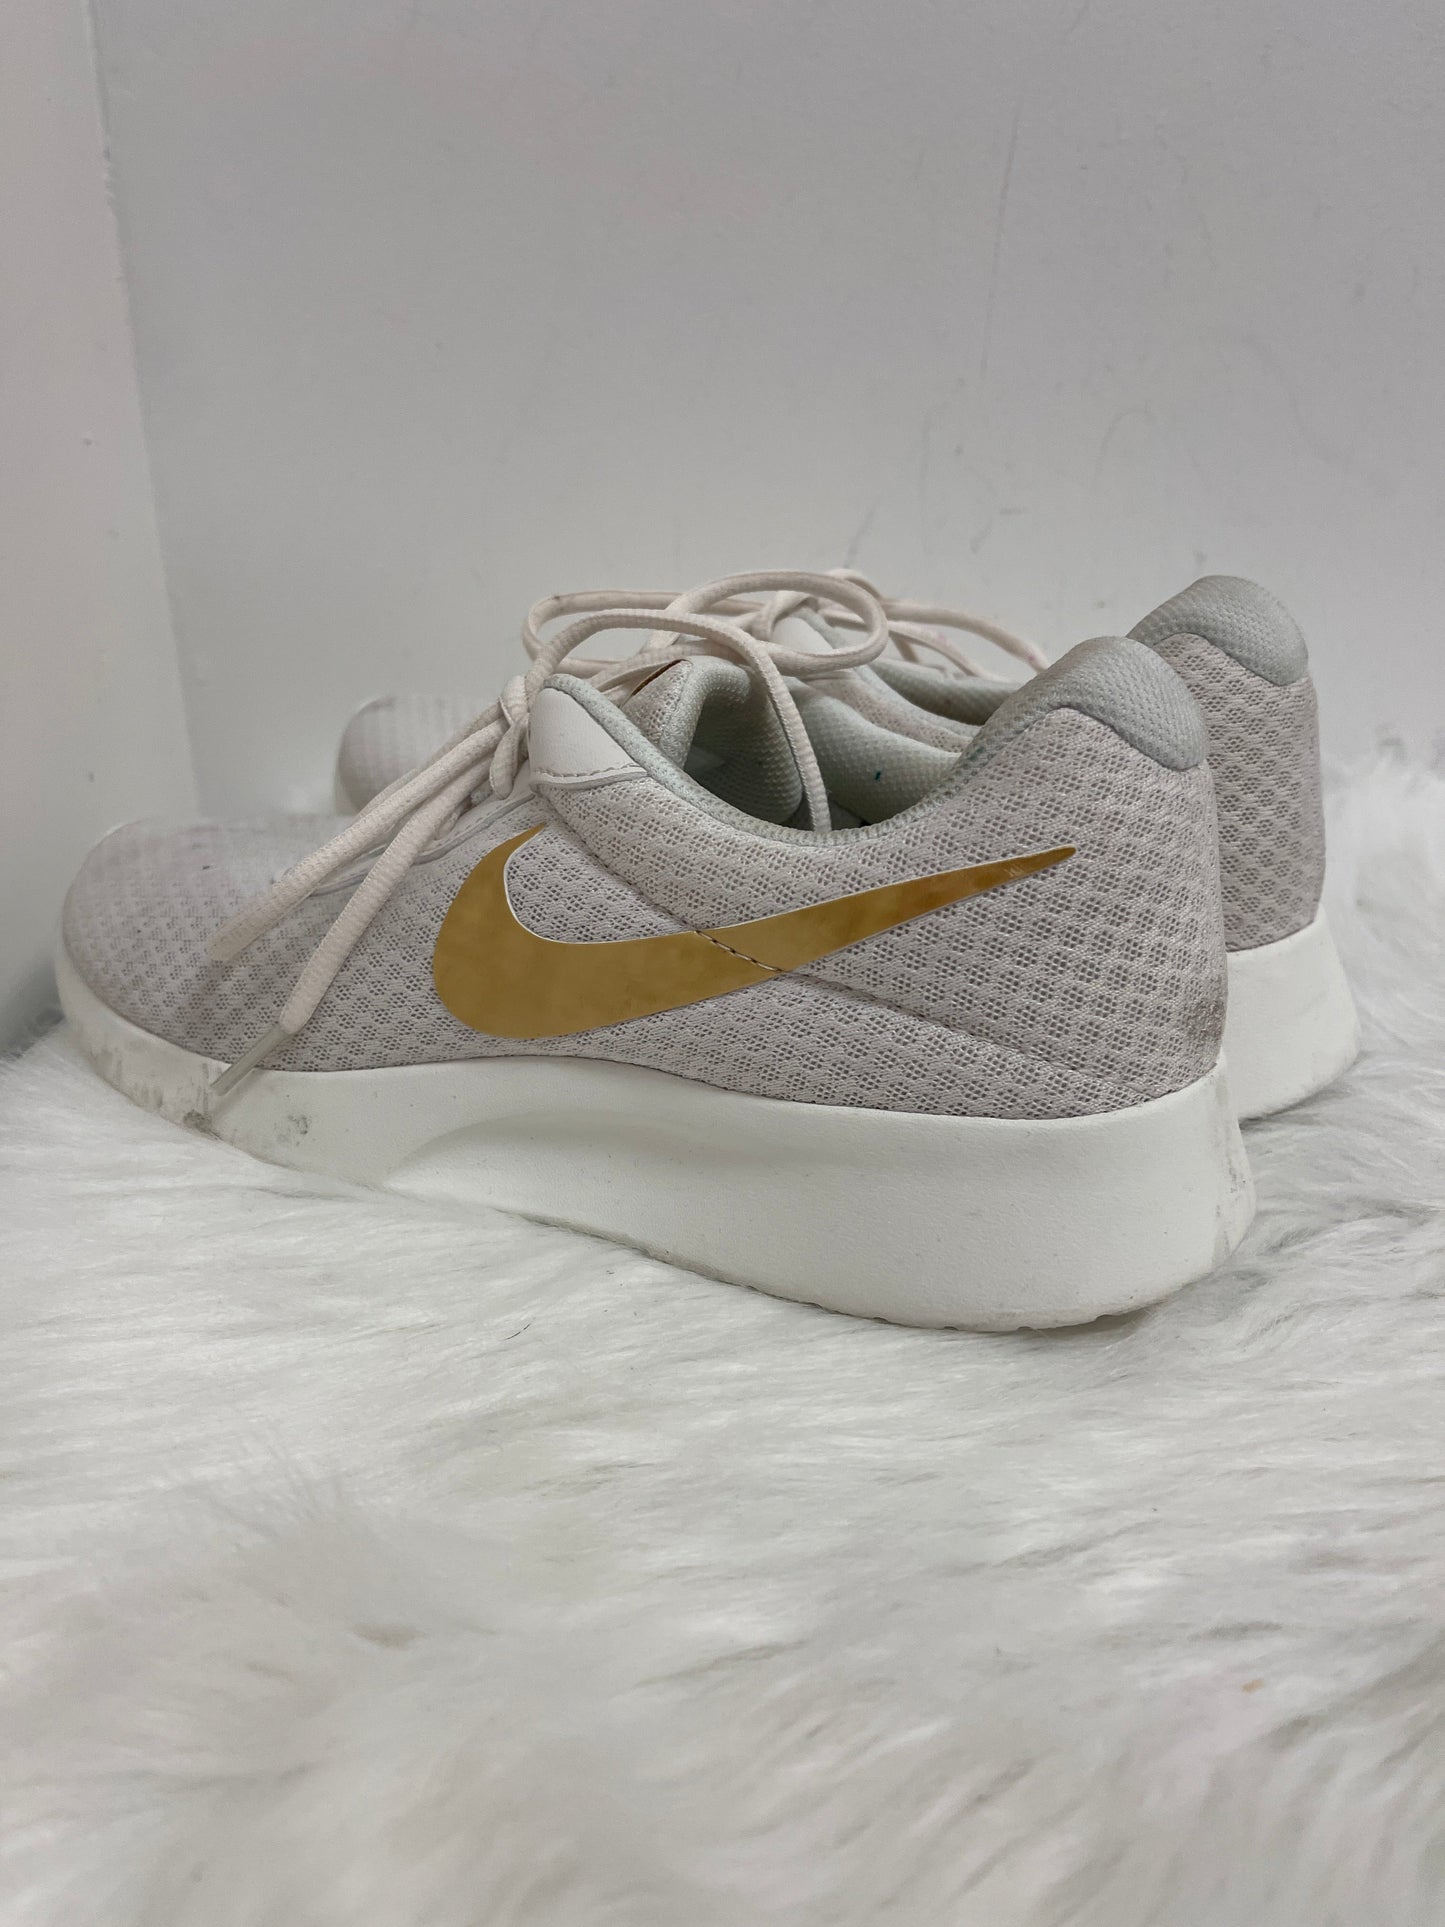 Cream Shoes Athletic Nike, Size 11